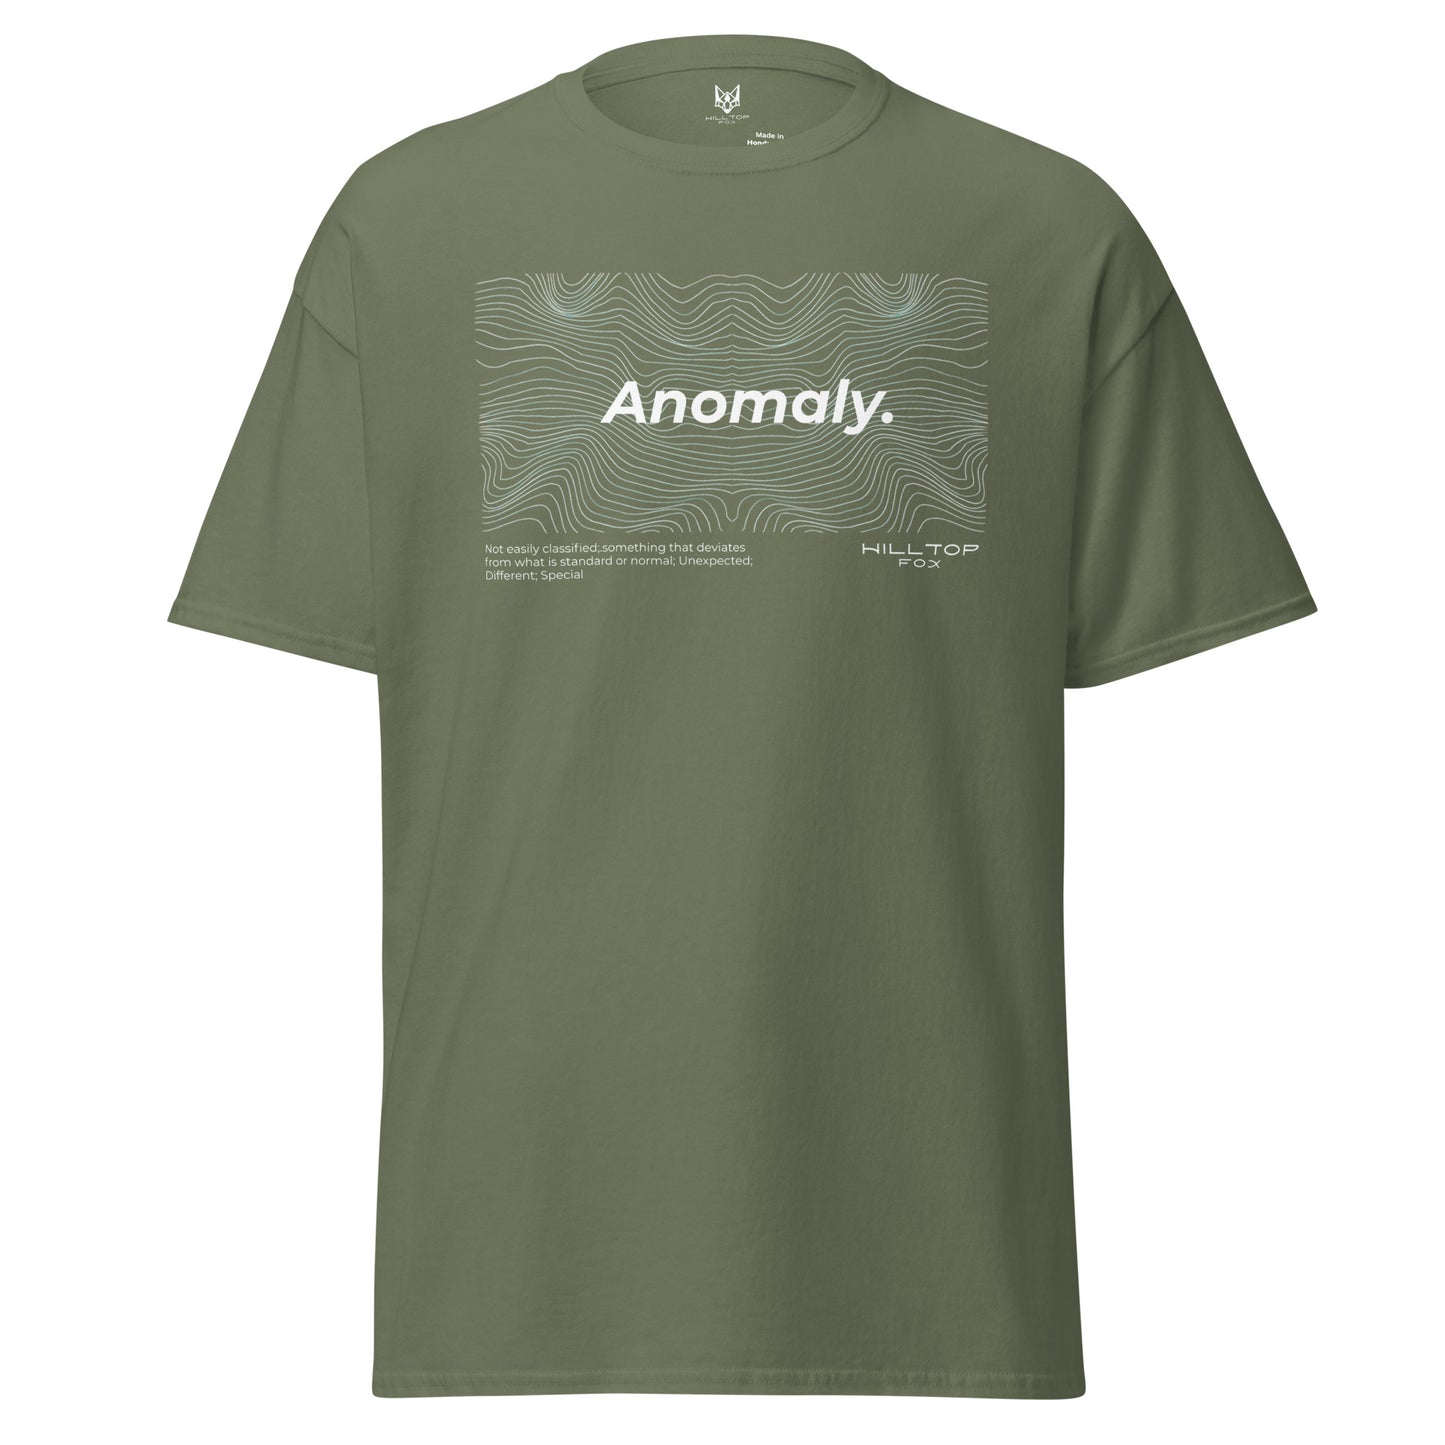 Camiseta de anomalía